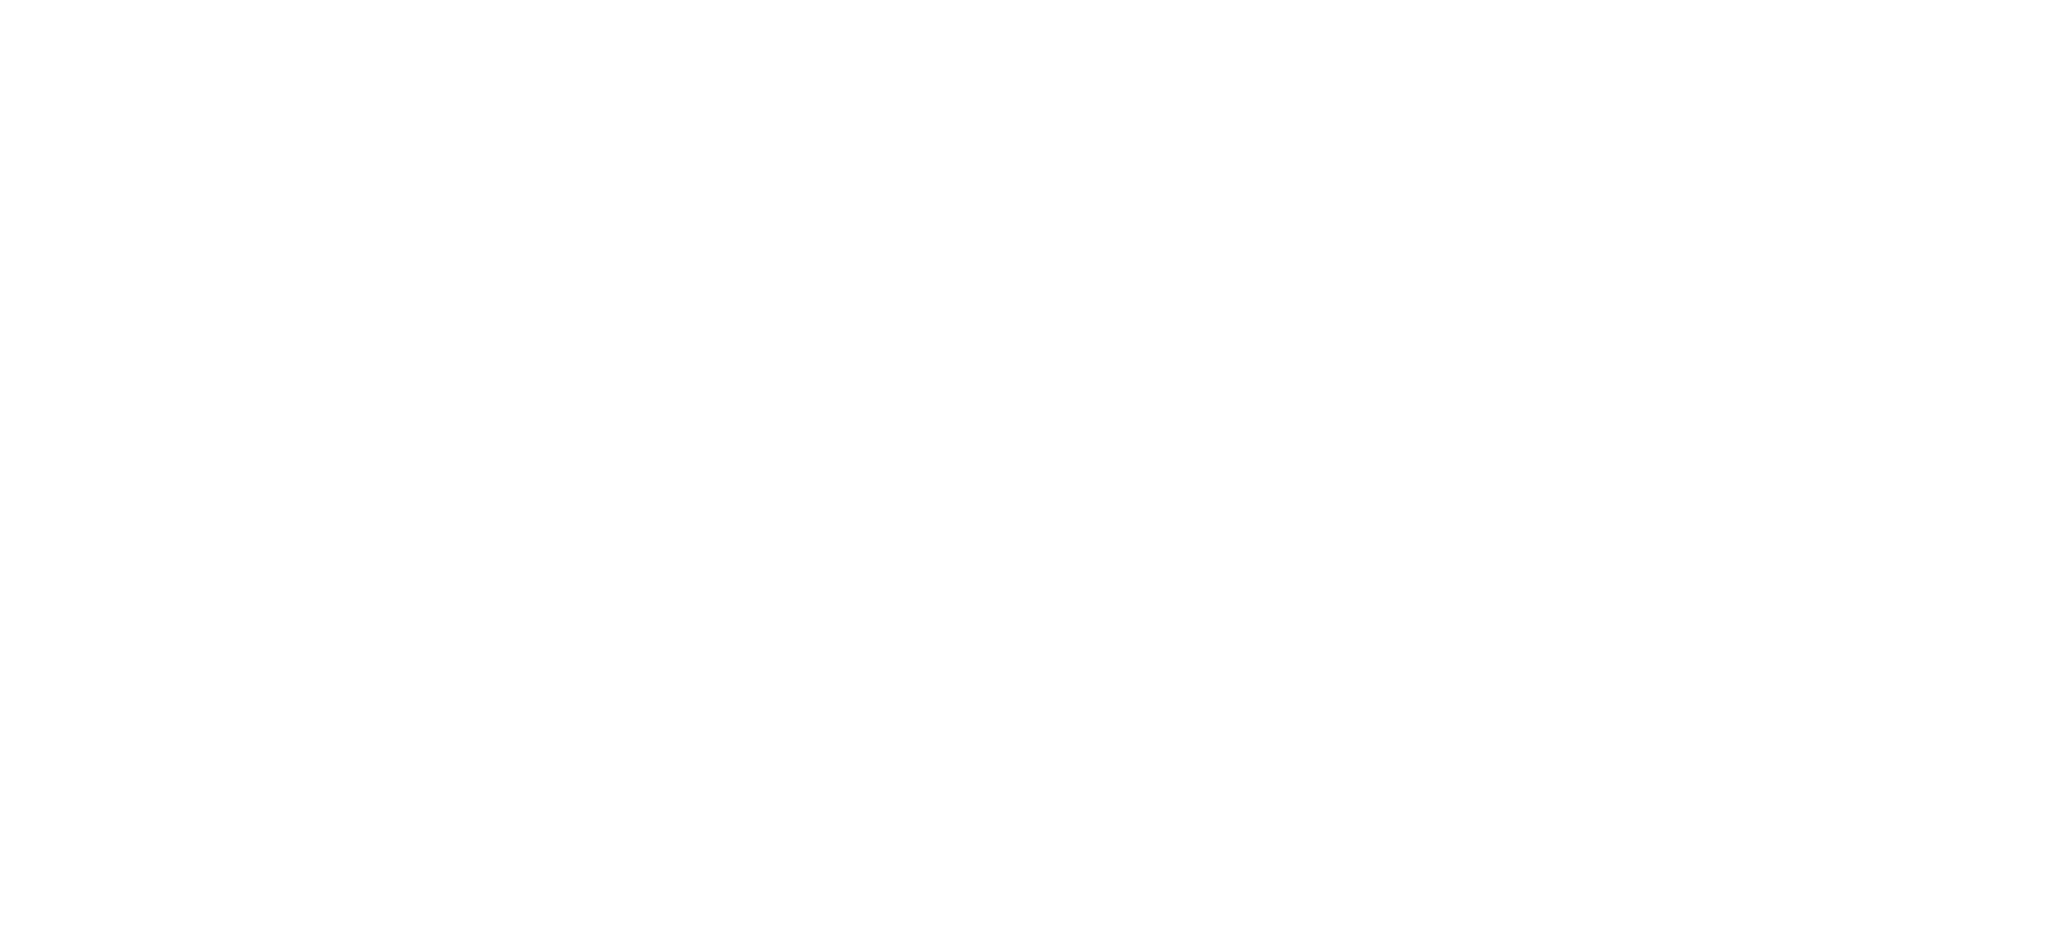 1625 Outreach Derby & Derbyshire in white